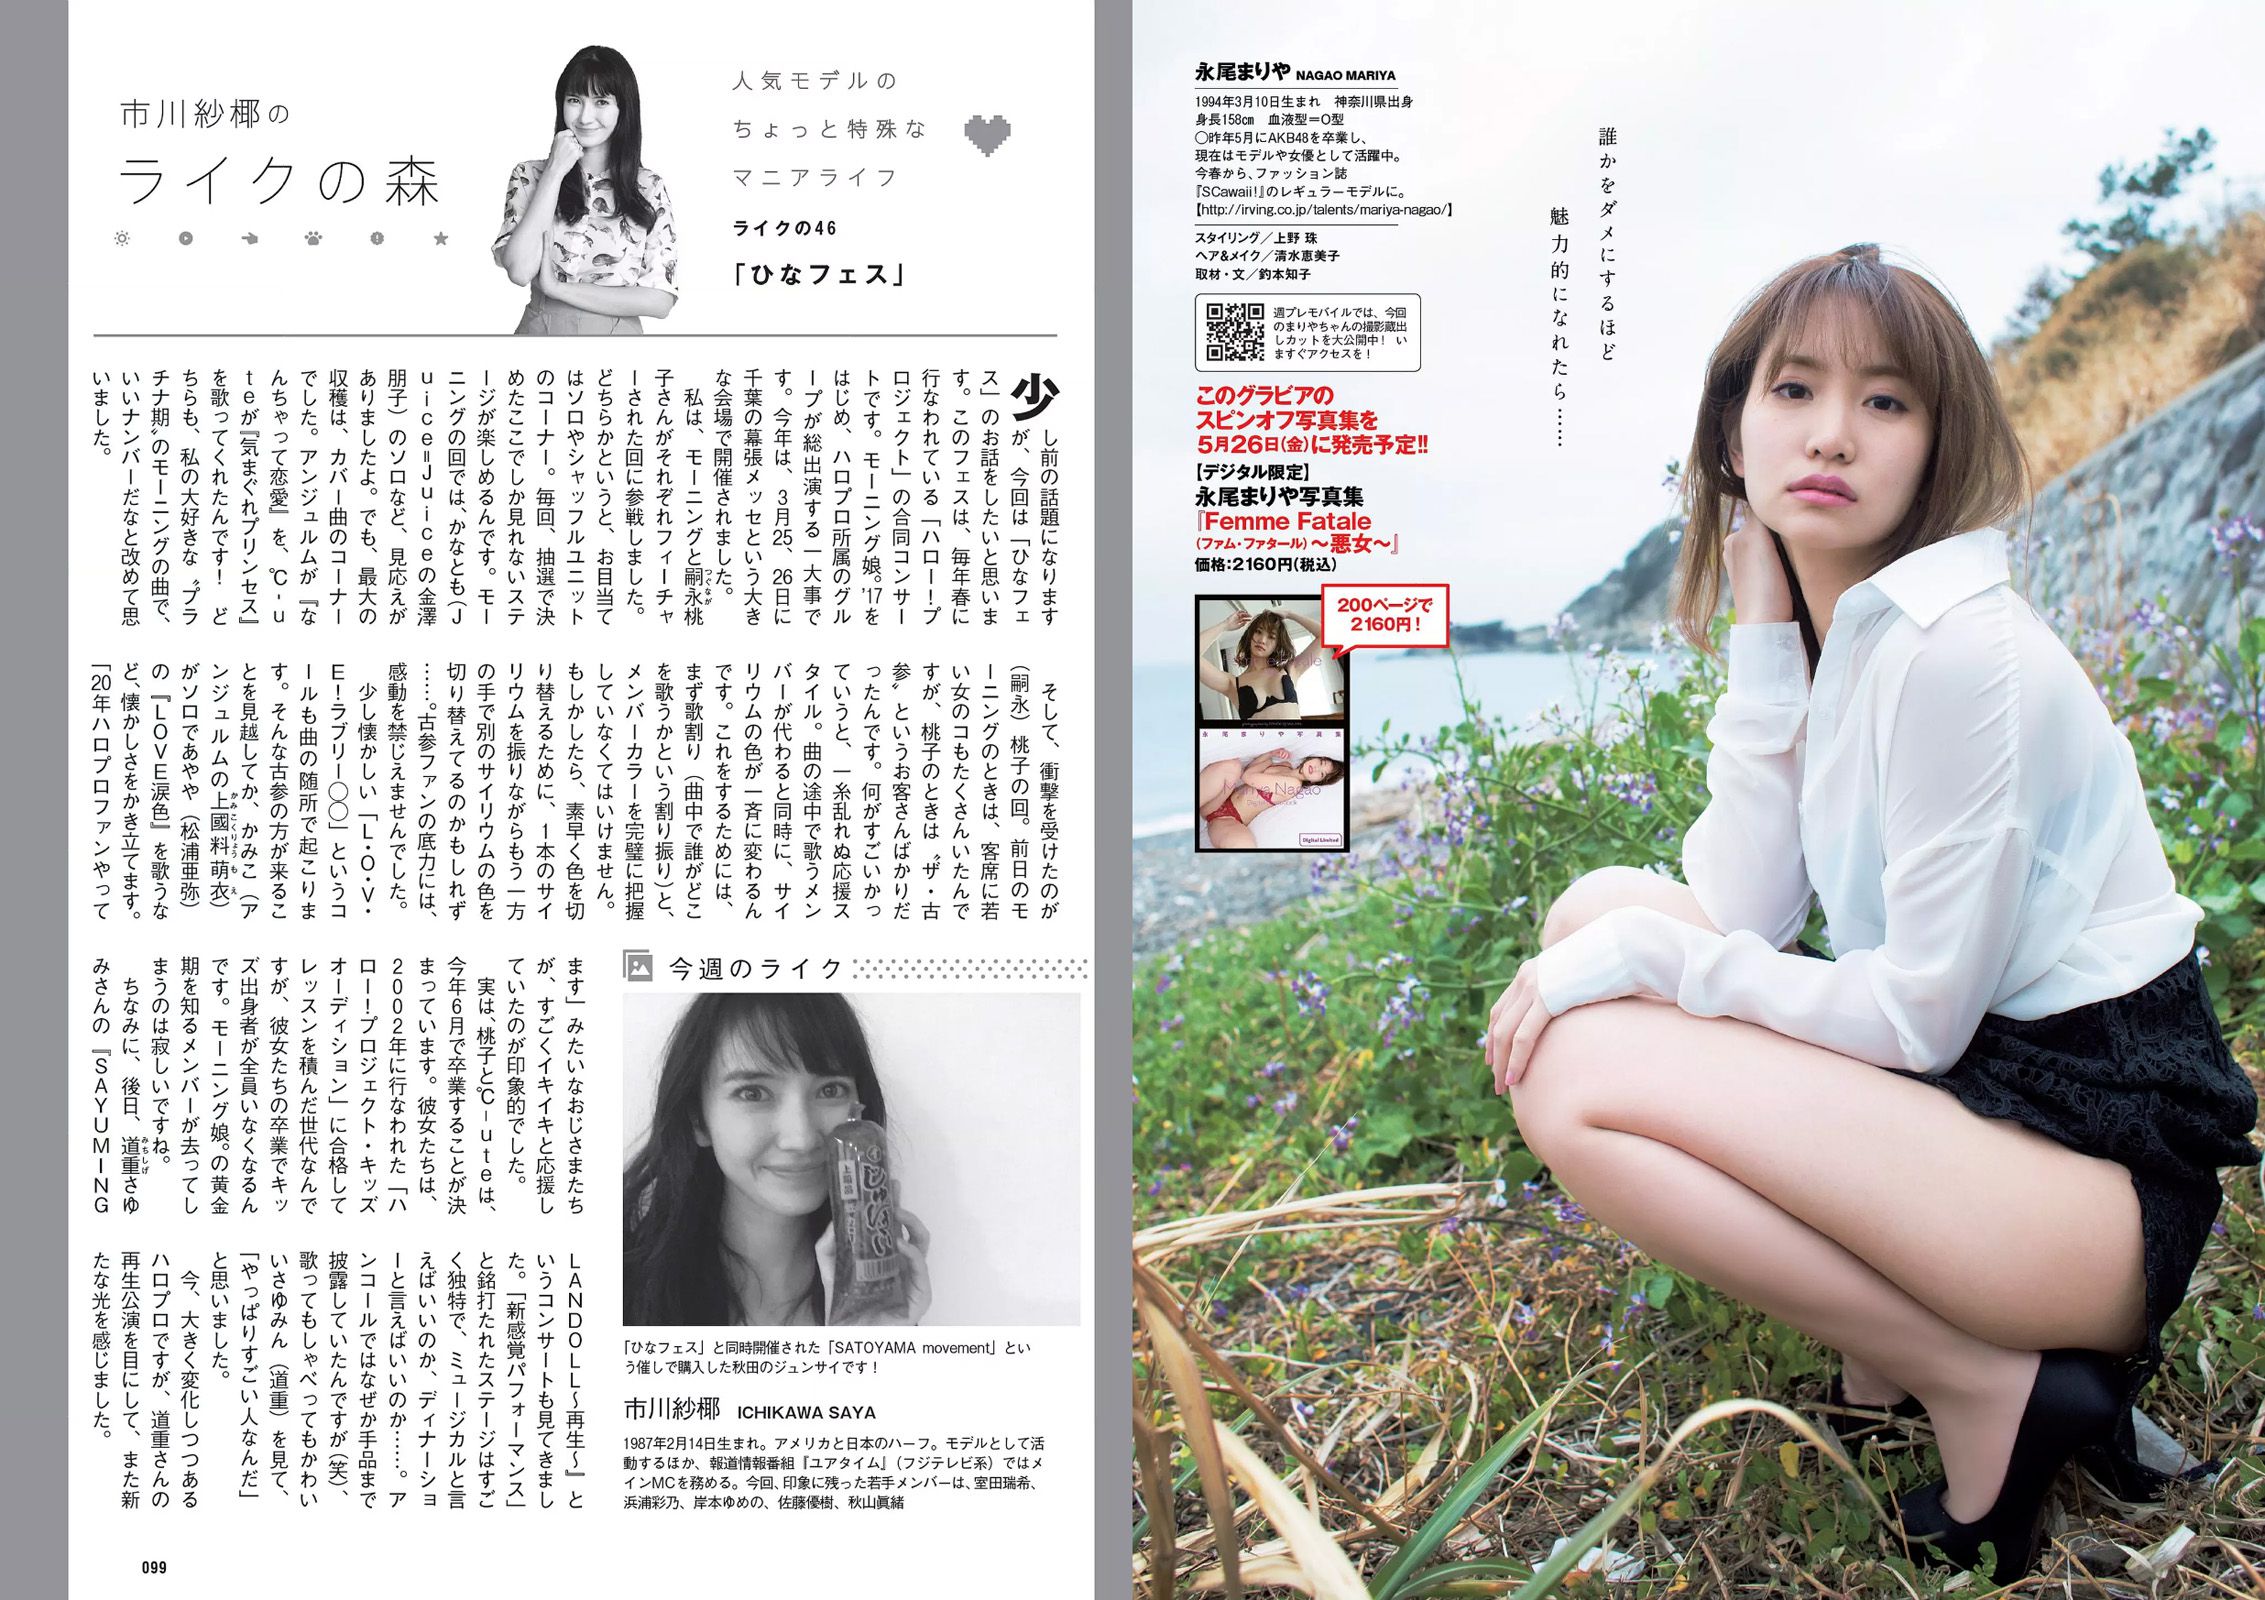 Reona Matsushita RaMu Akari Takamuta Mariya Nagao Suzuka Akimoto Michiko Tanaka Hazuki Nishioka [Playboy semanal] 2017 No.21 Fotografía Página 13 No.58d2ab